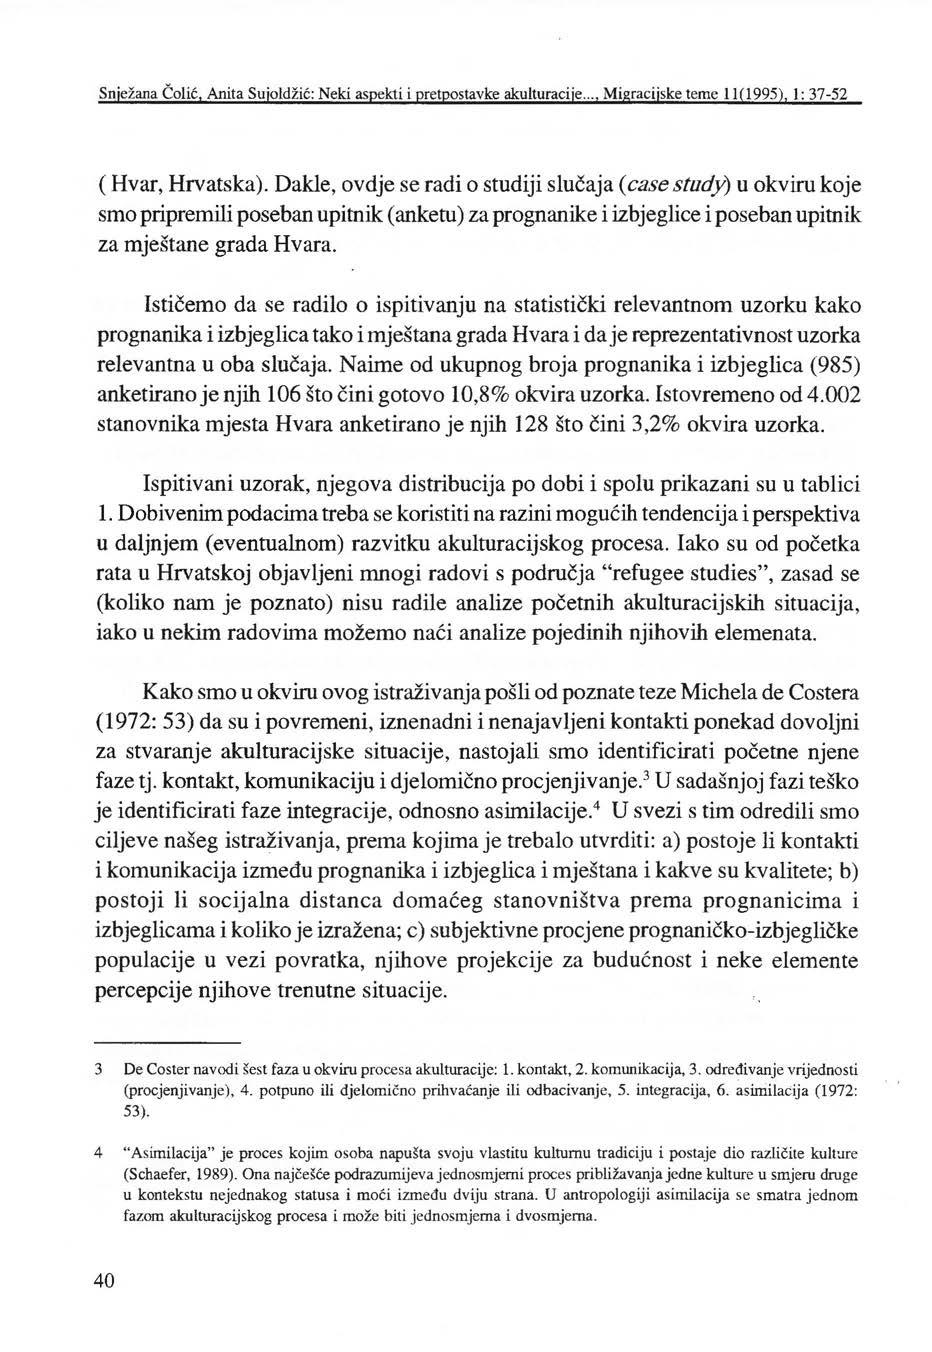 Snježana Čolić, Anita Sujoldžić: Neki aspekti i pretpostavke akulturacije..., Migracijske teme 11(1995), J: 37-52 (Hvar, Hrvatska).